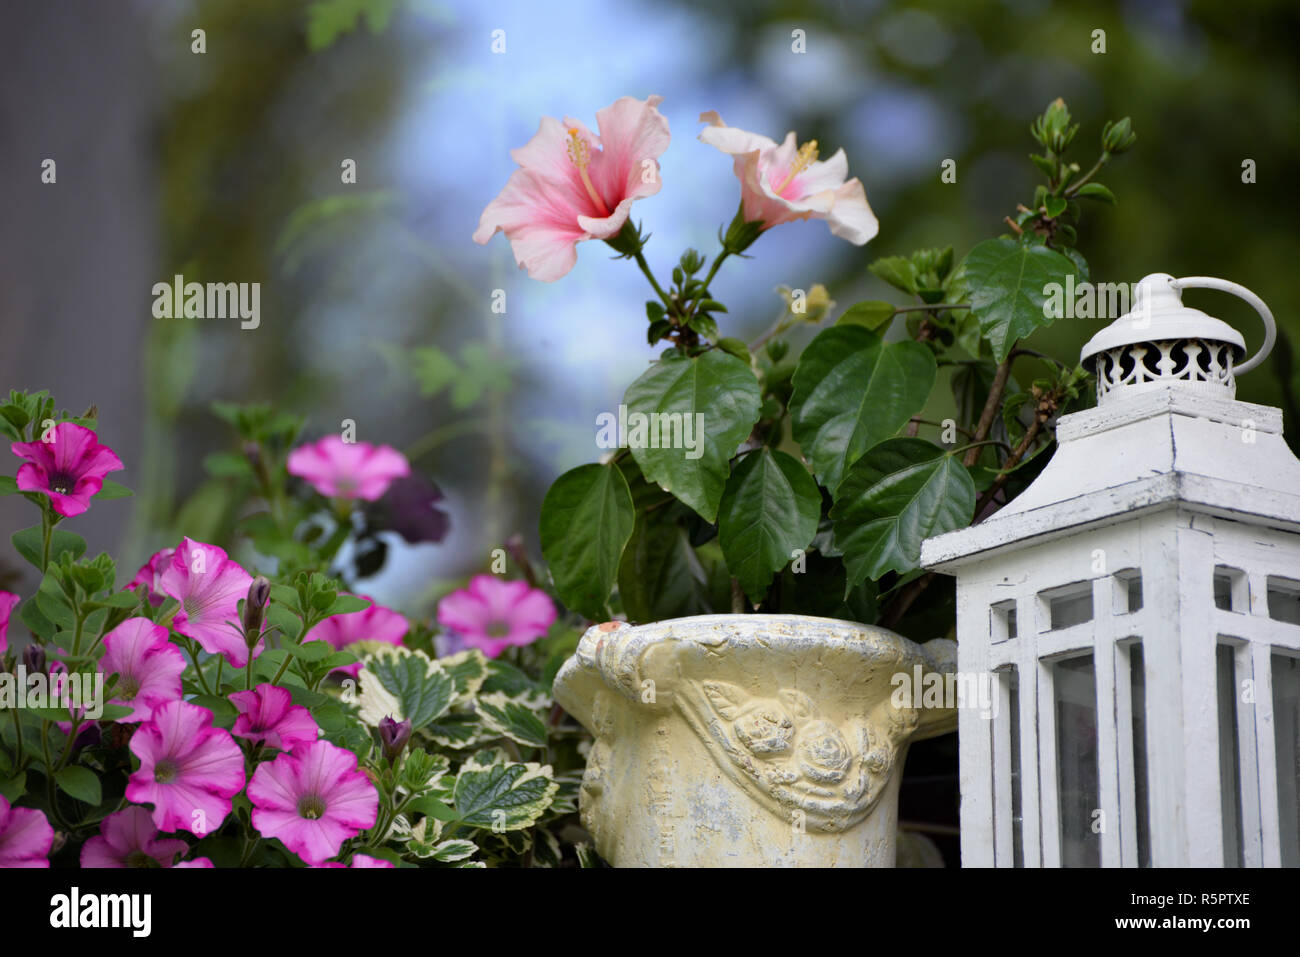 La decorazione floreale sul davanzale con fiori di colore rosa Foto Stock